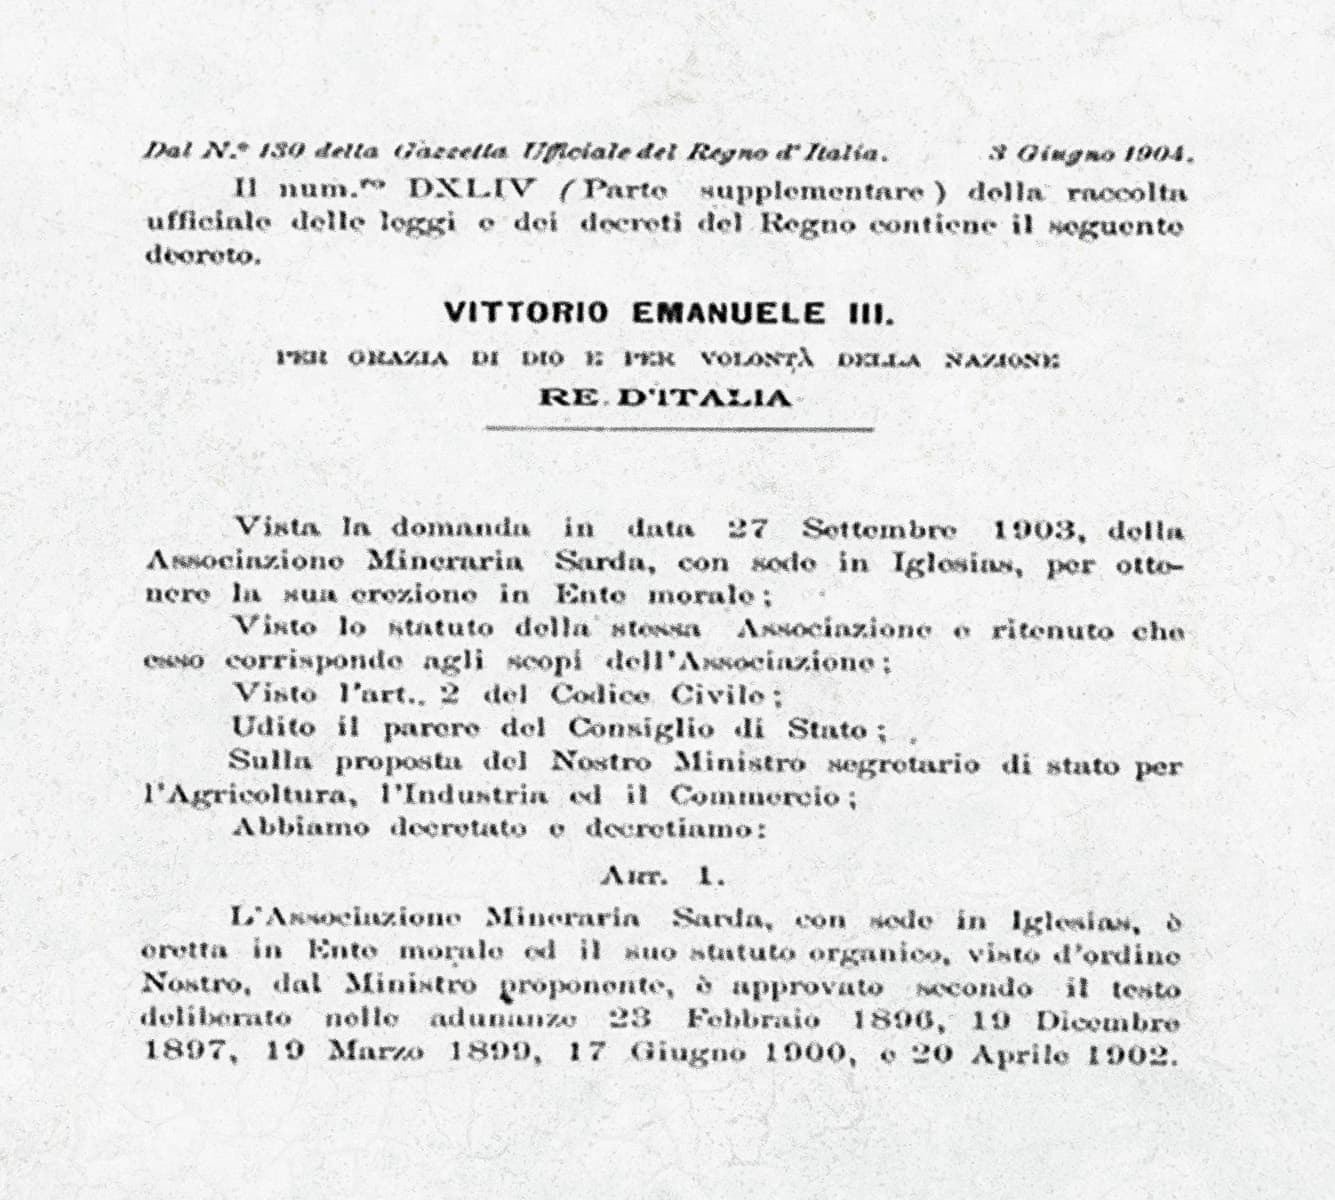 Gazzetta Ufficiale N°130 - 3 Giugno 1904